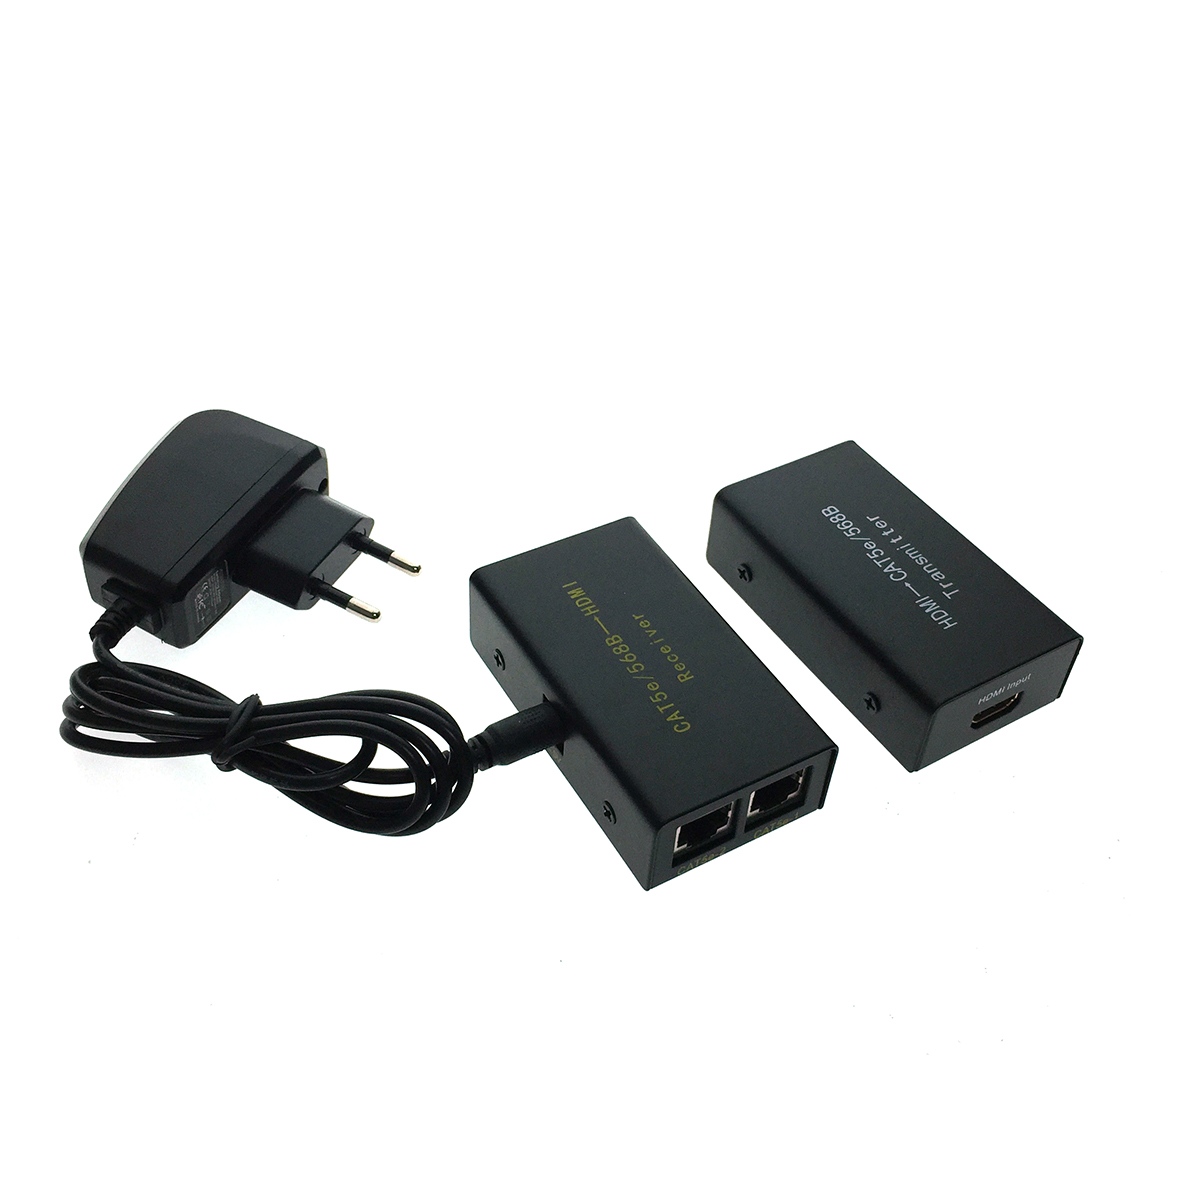 Передатчик сигнала HDMI Espada HCL0101 (передача сигнала HDMI 1.2а по витой паре (2 кабеля CAT-5e/6), видеосигнал до 1080p на расстояние до 30 м, в ко